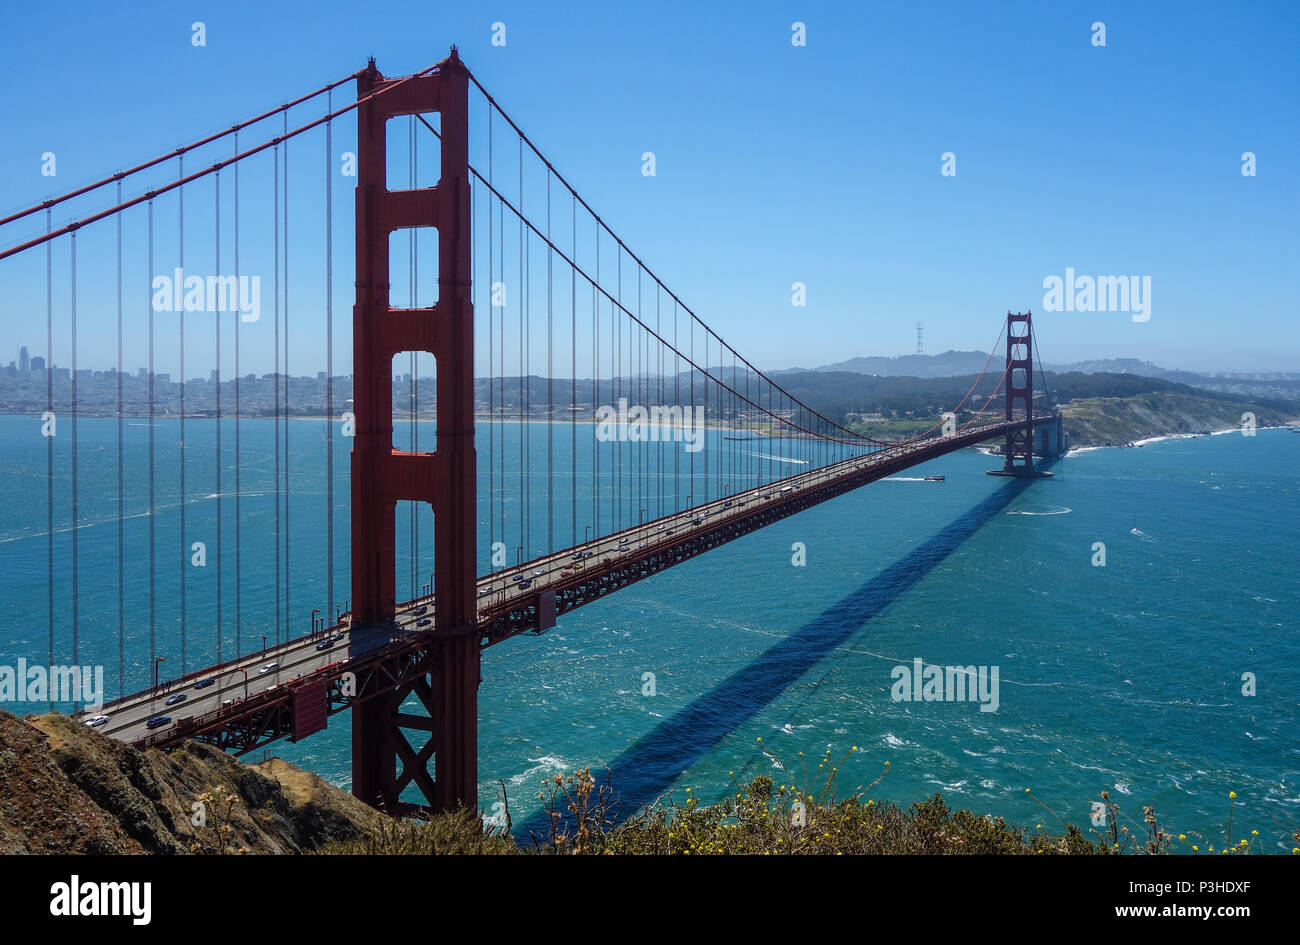 San Francisco, Estados Unidos. 04 2017. 04.06.2017, California, Estados Unidos, San Francisco: el Golden Gate Bridge es el hito indiscutible y probablemente la atracción más famosa de la ciudad de San